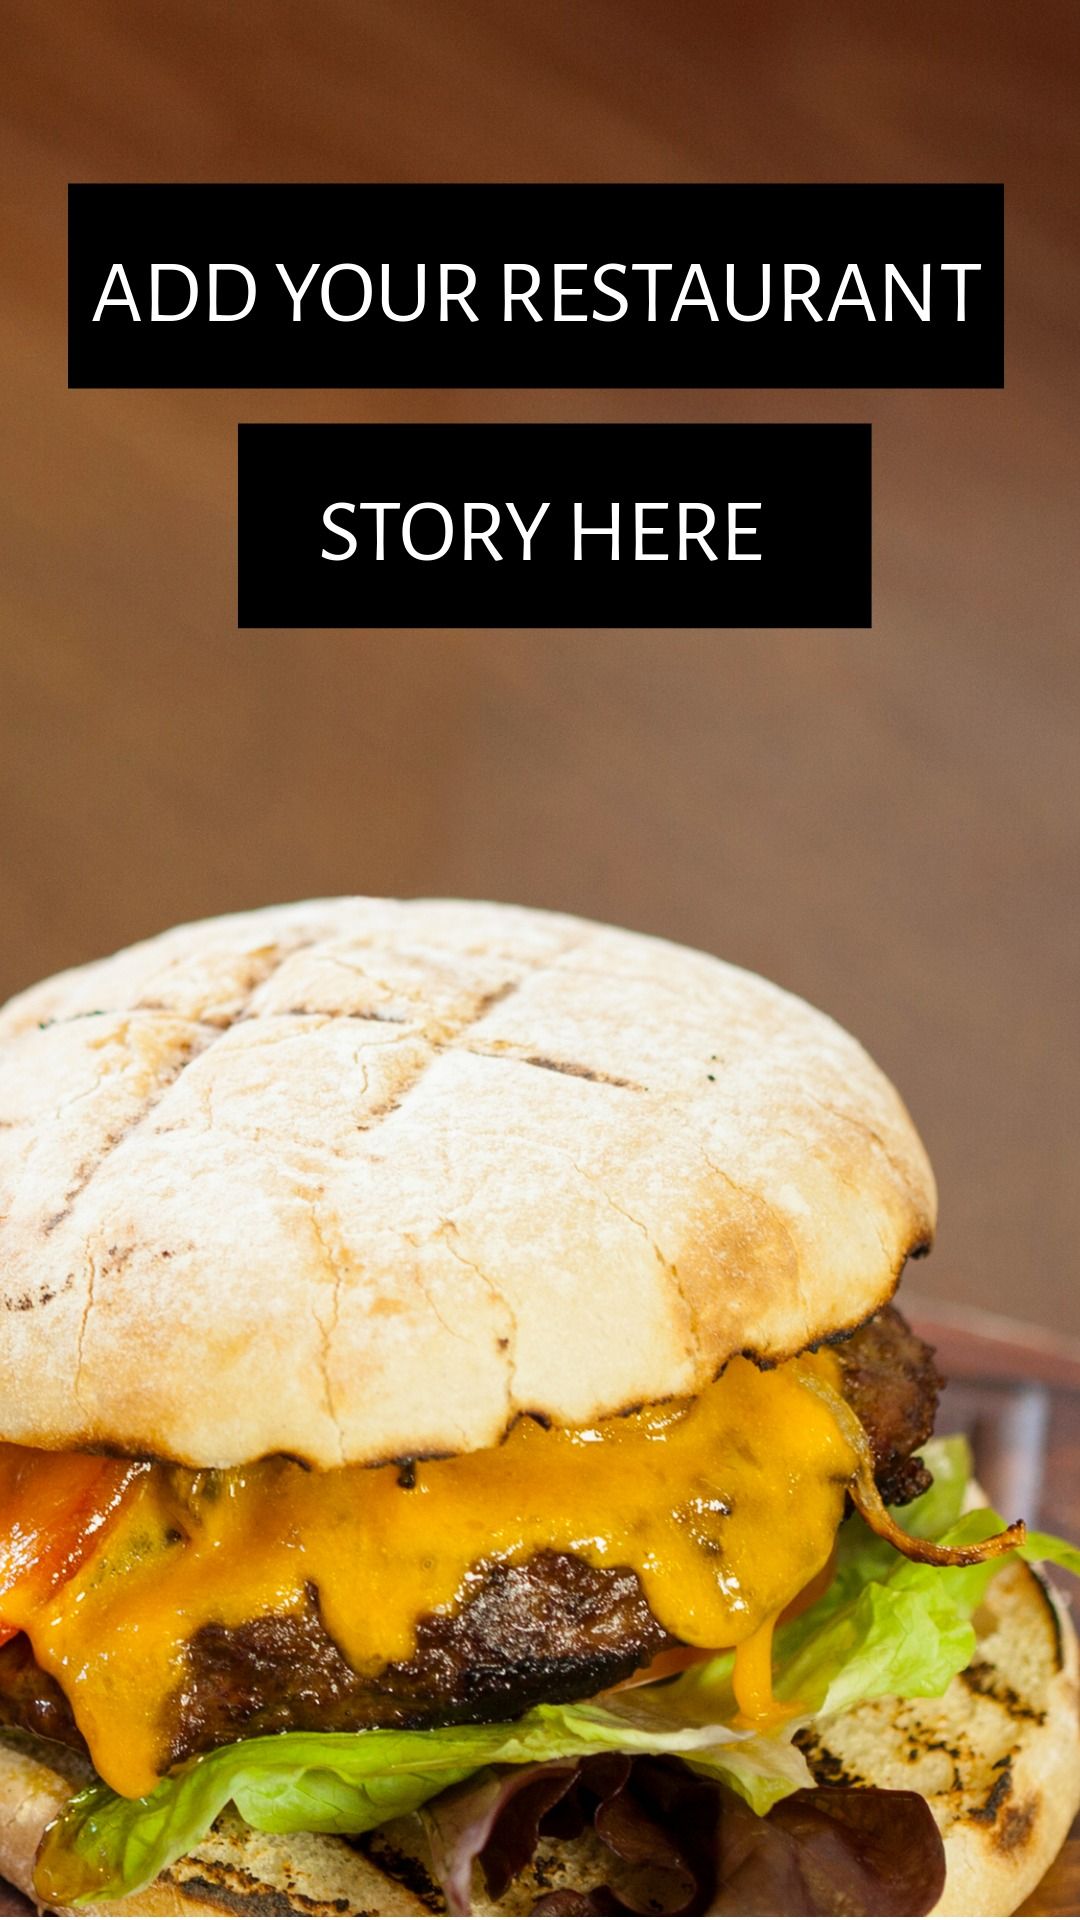 Story pour restaurant avec burger en arriere plan - idées de story Instagram efficaces - image